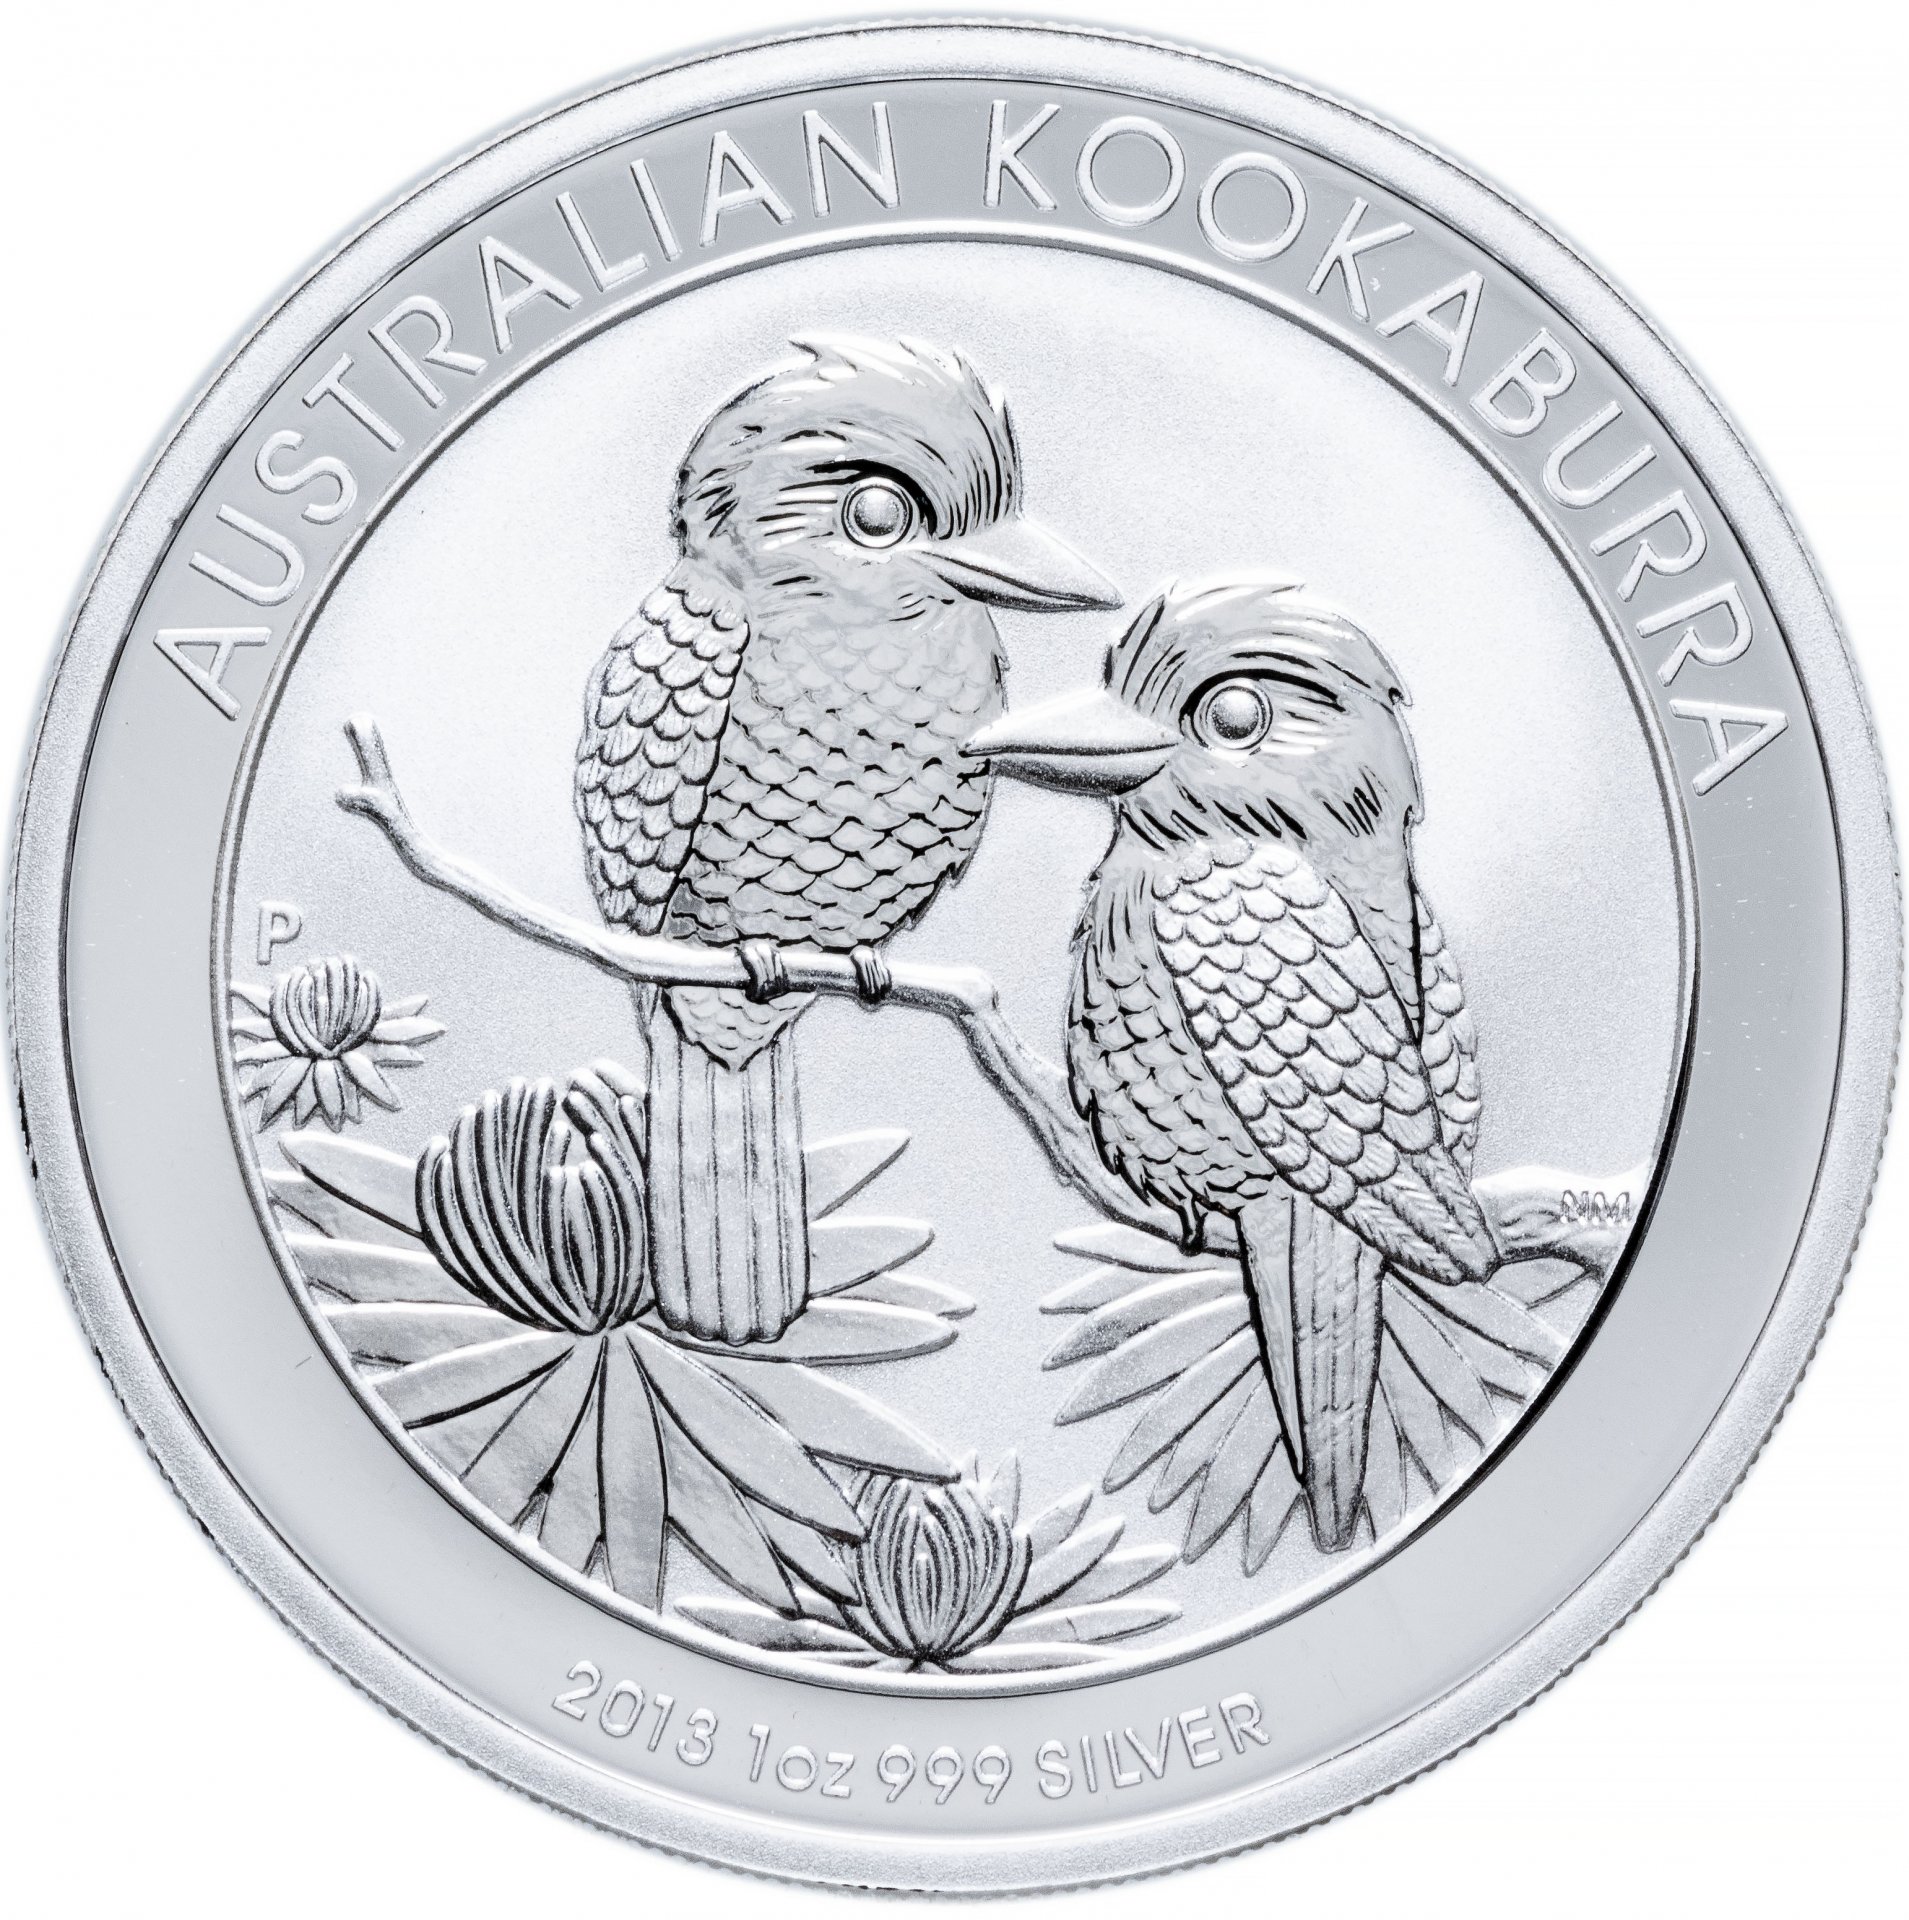 Монета австралия 1 доллар. Кукабарра 2013 серебро монета Австралия. Серебряные монеты Австралии Кукабарра. Серебряная монета Кукабарра. Серебряная монета Австралии с кукабаррой.